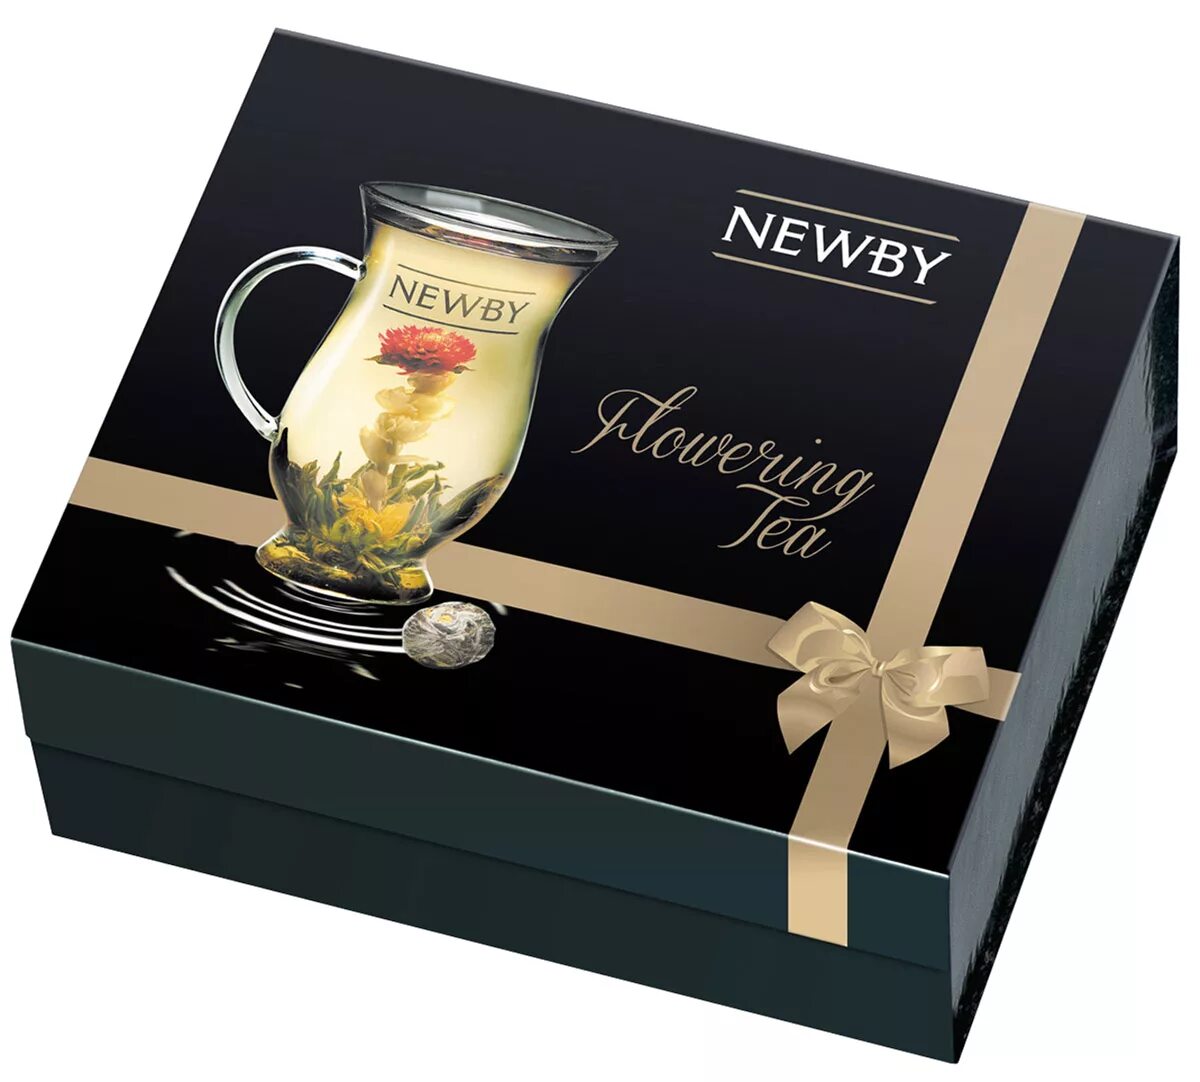 Чай Newby подарочный набор. Чай Newby набор чайный. Чай черный Newby Black Teas ассорти подарочный набор. Чай черный Newby Crown ассорти подарочный набор. Купить набор чая на озон